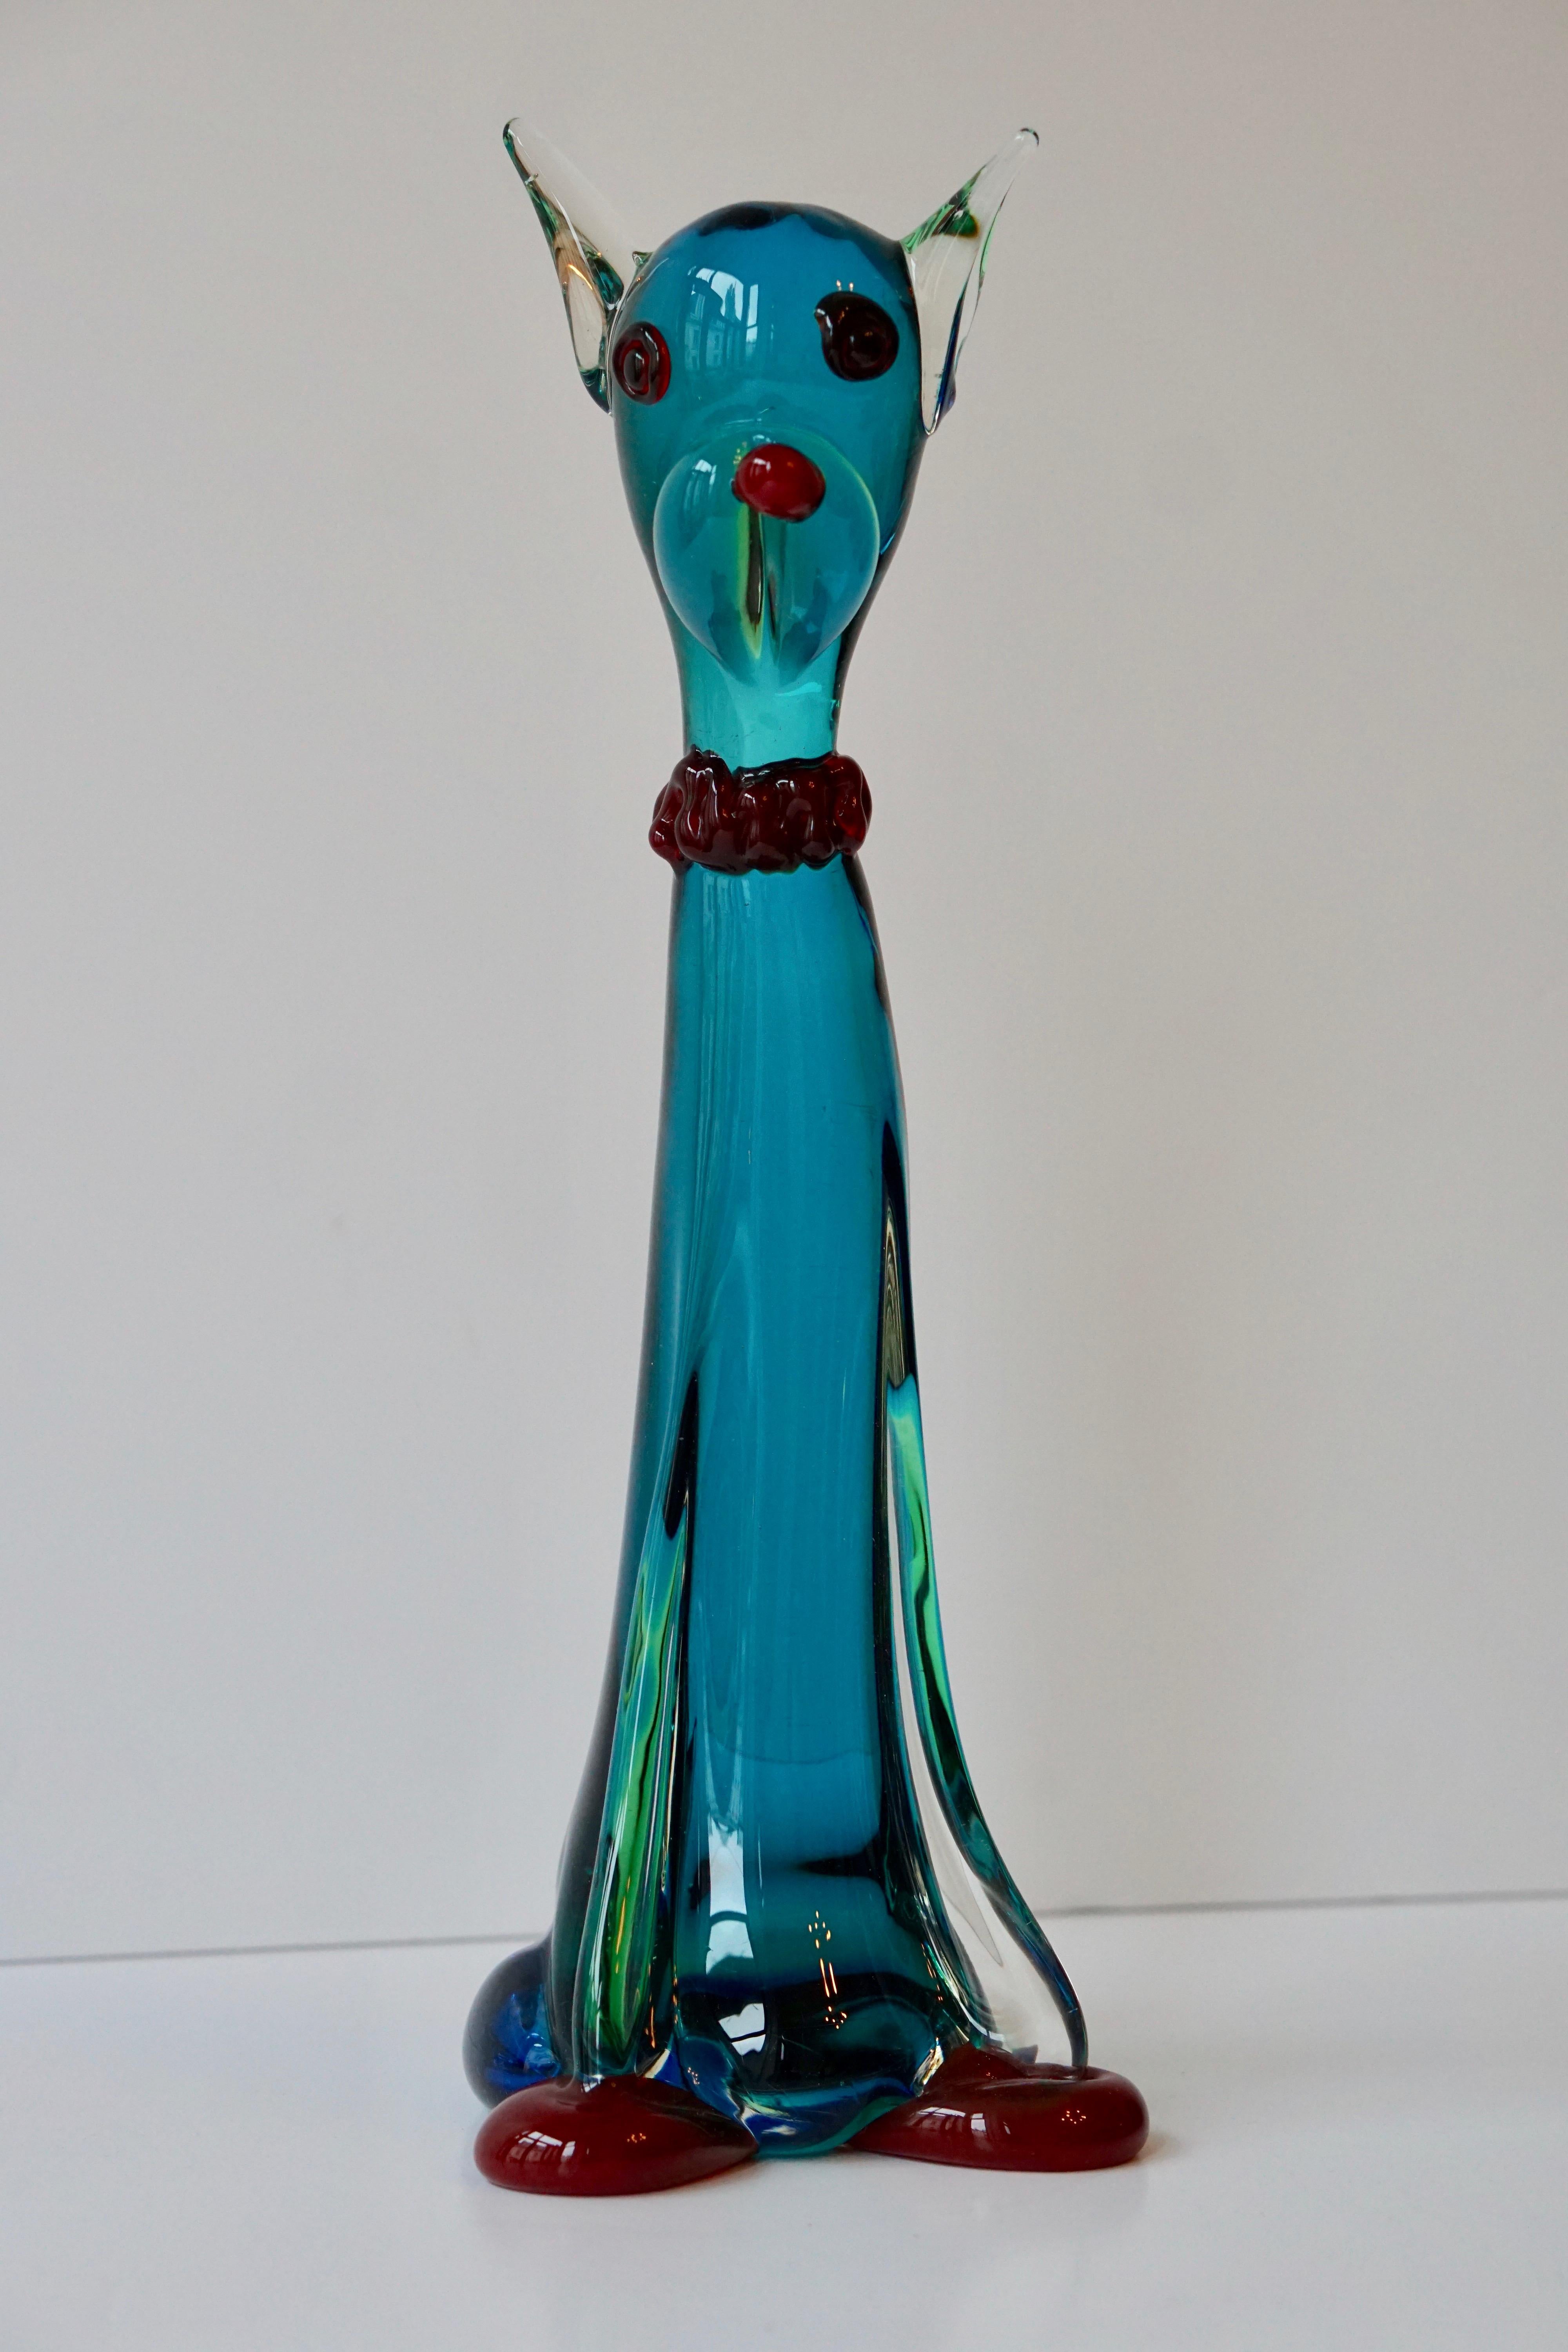 Italienische Murano-Glasskulptur einer Katze.
Maße: Höhe 40 cm;
Gewicht 3 kg.